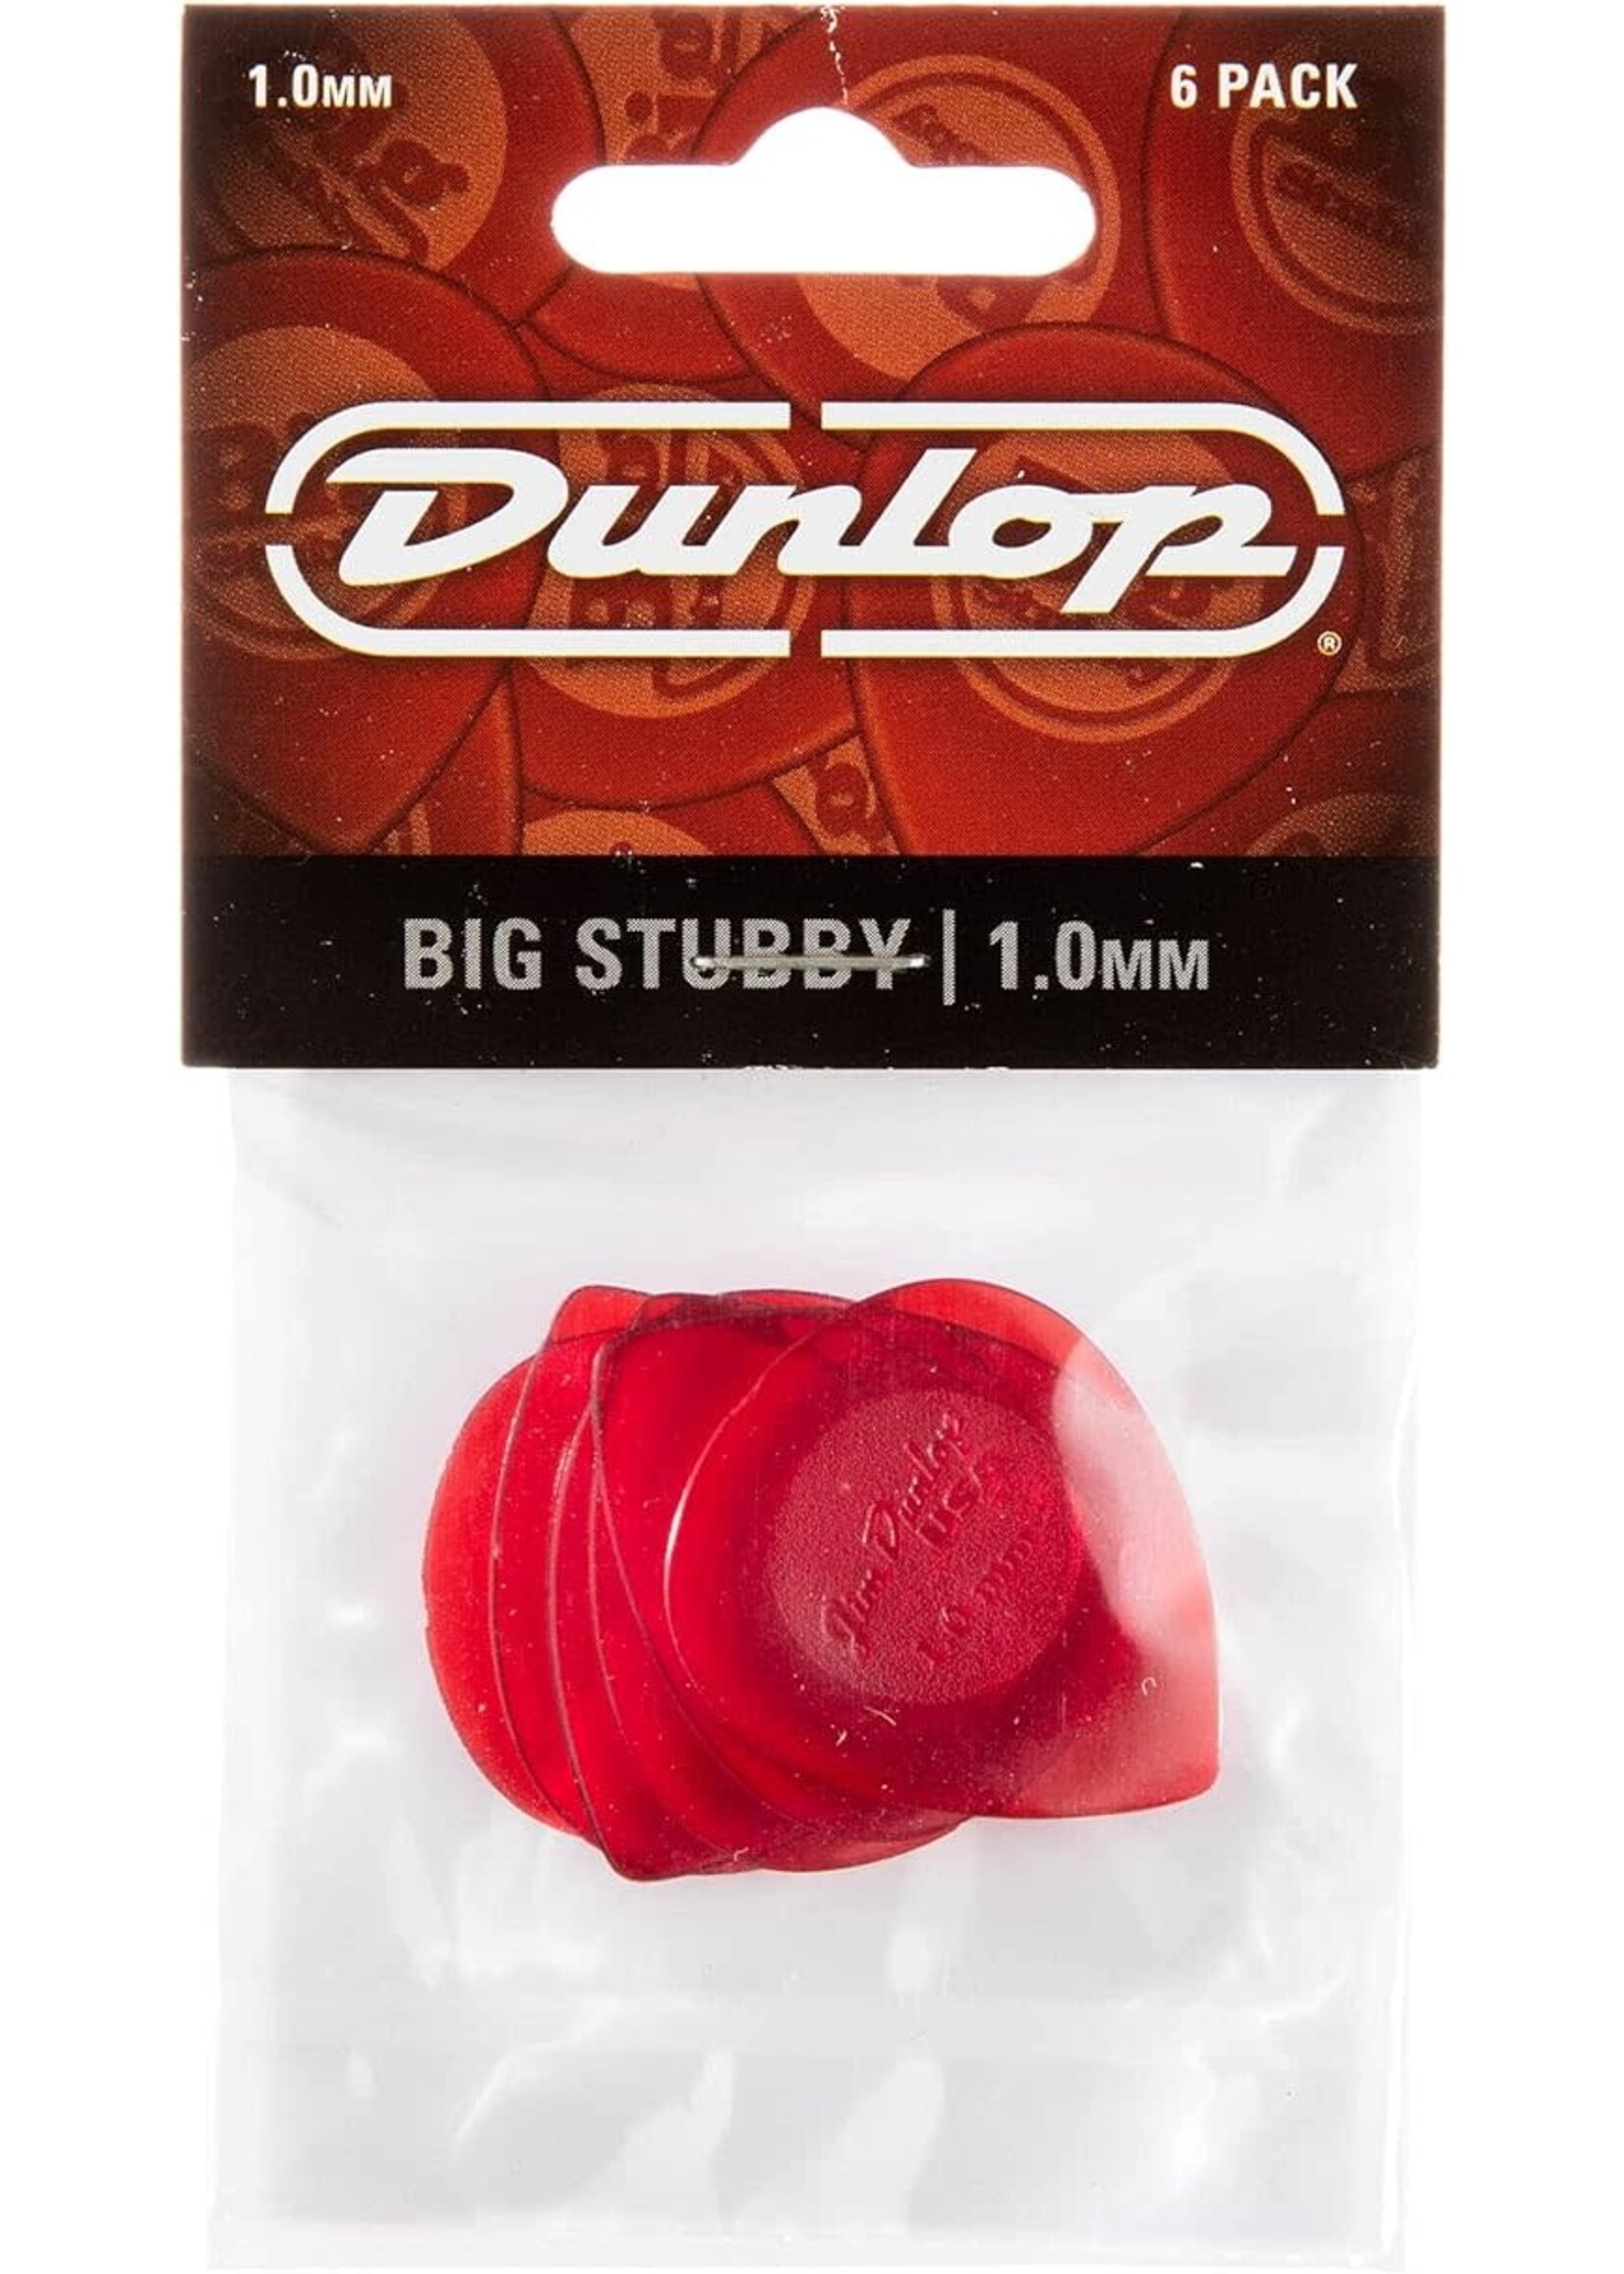 Dunlop Dunlop 475P1.0 Big Stubby 6 Pack